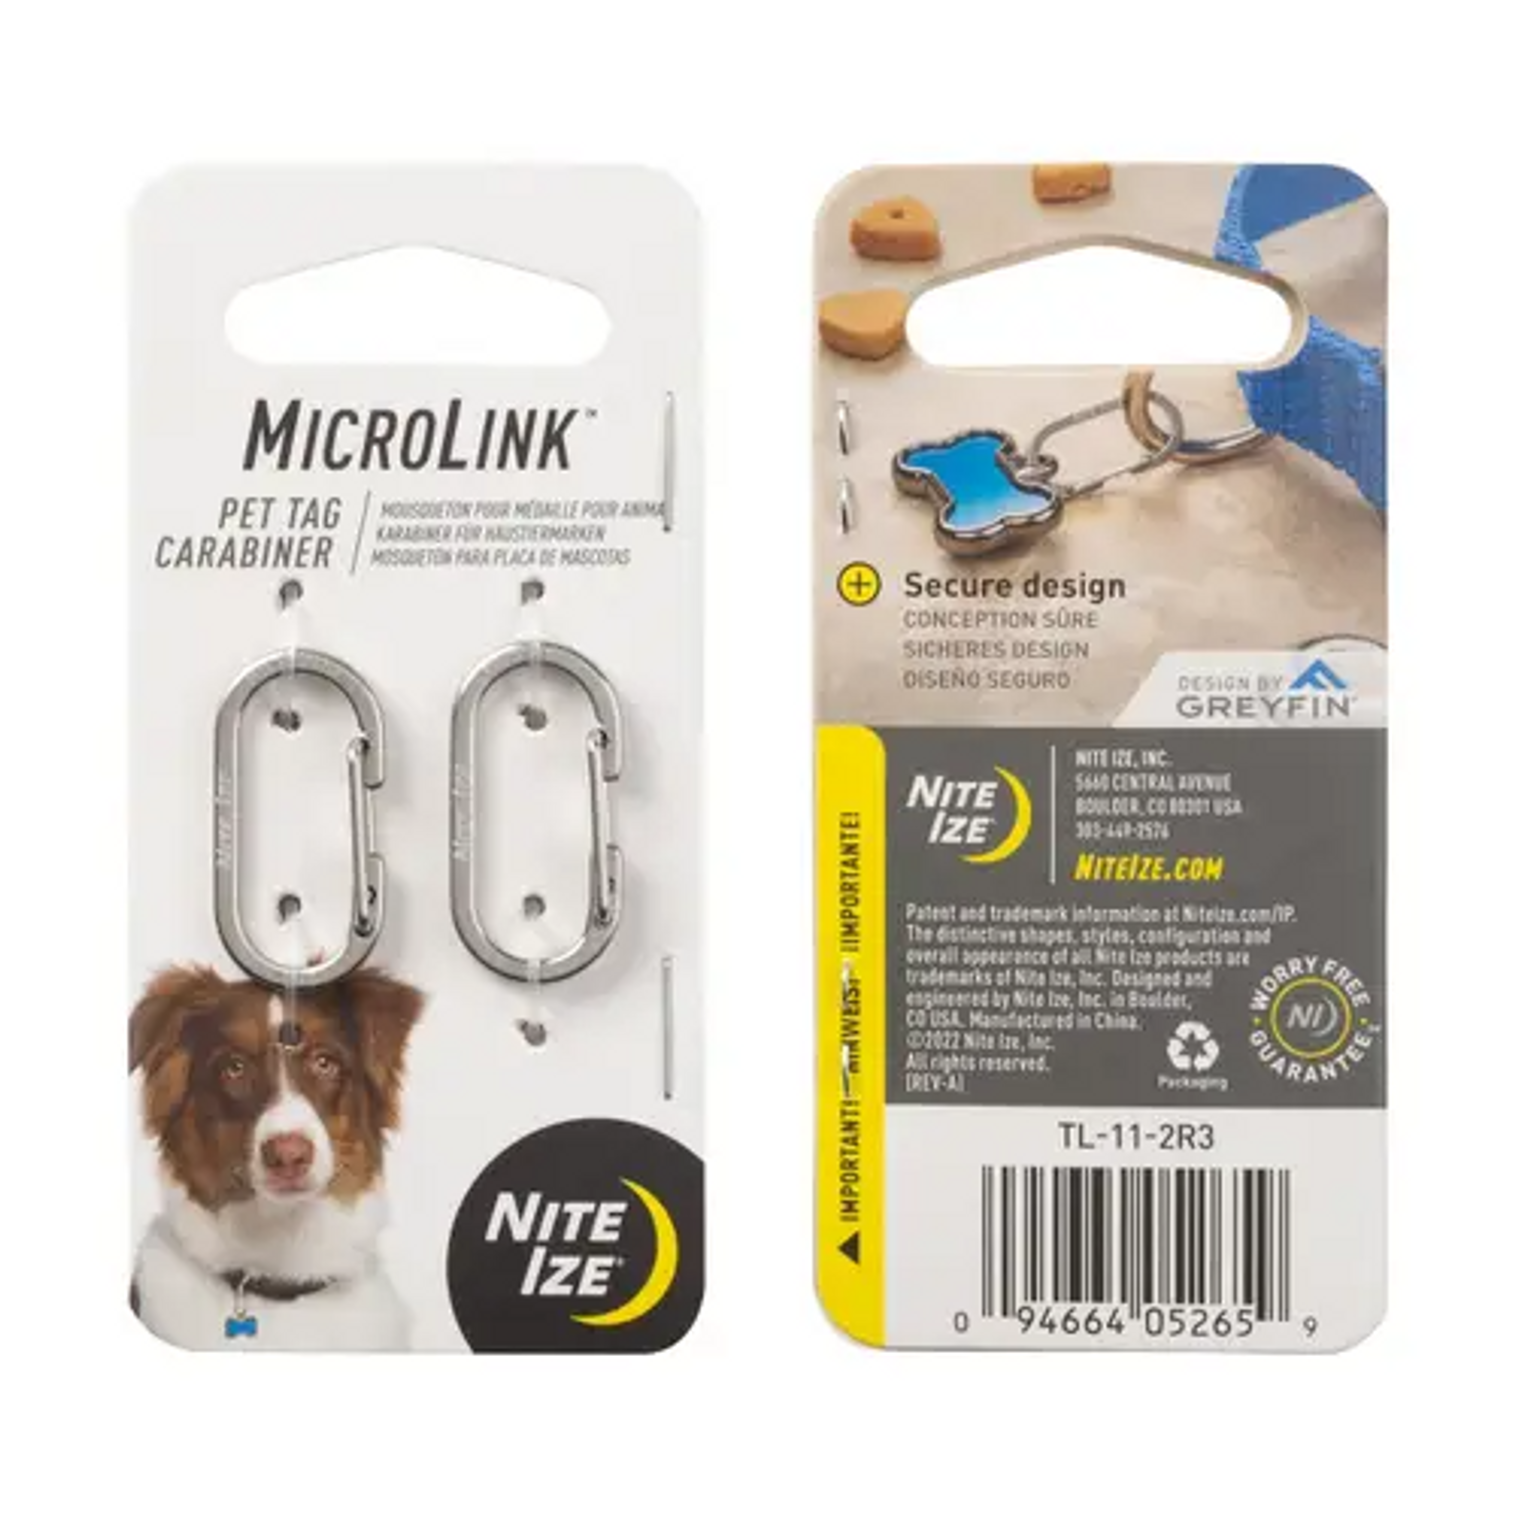 Microlink Pet Tag Carabiner - 2 Pack